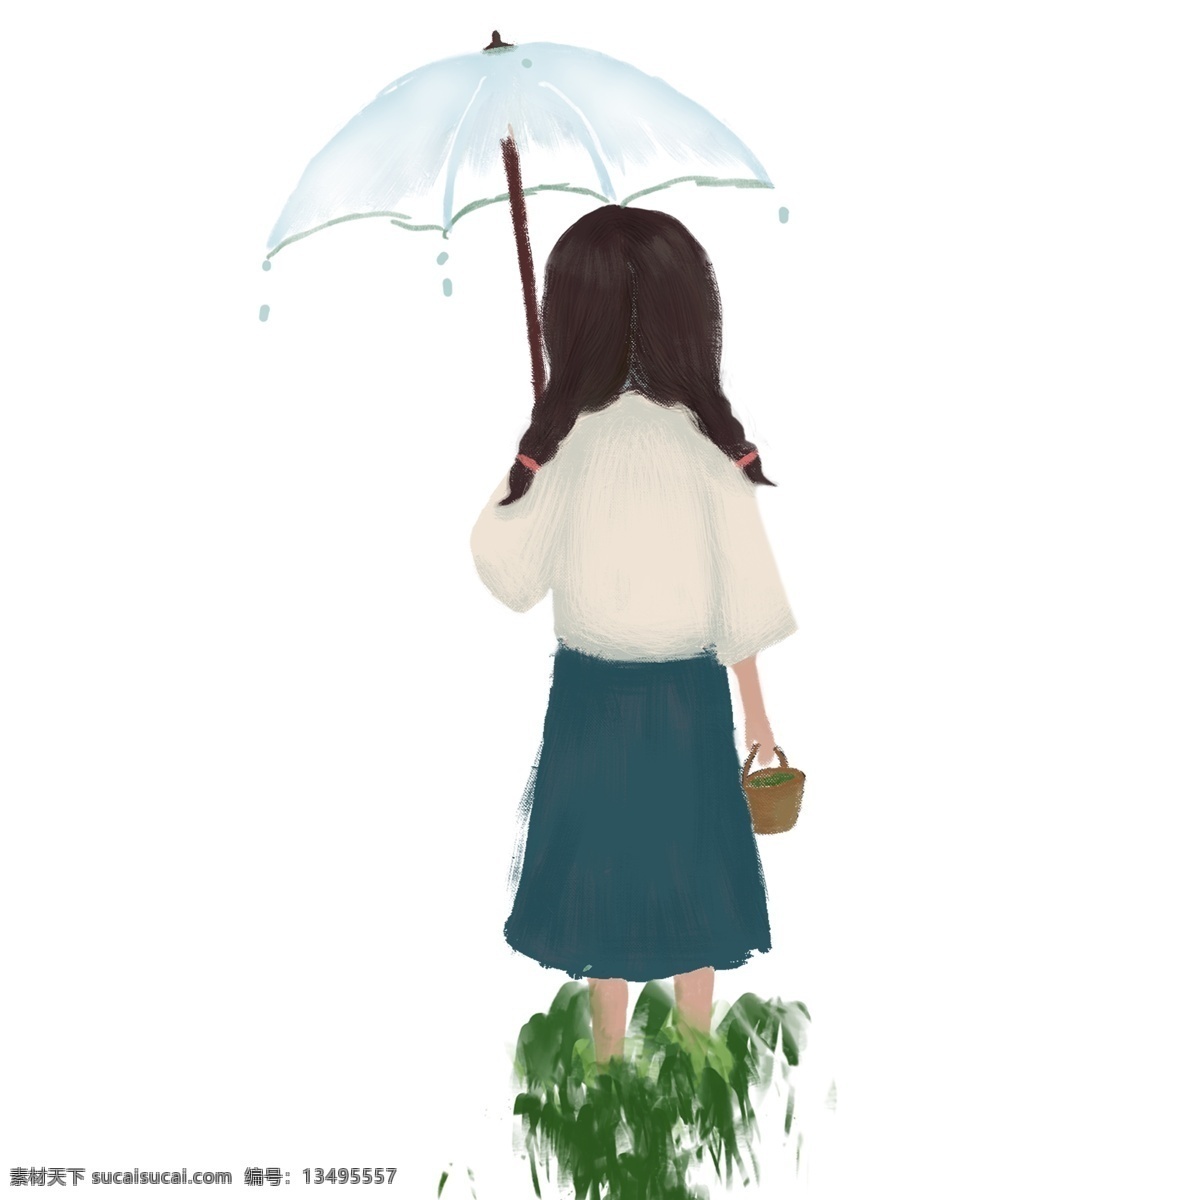 雨 中 撑 伞 漫过 草地 小女孩 背影 免 抠 图 撑伞 扎 麻花 辫 穿着 裙子 提 篮子 小姑娘